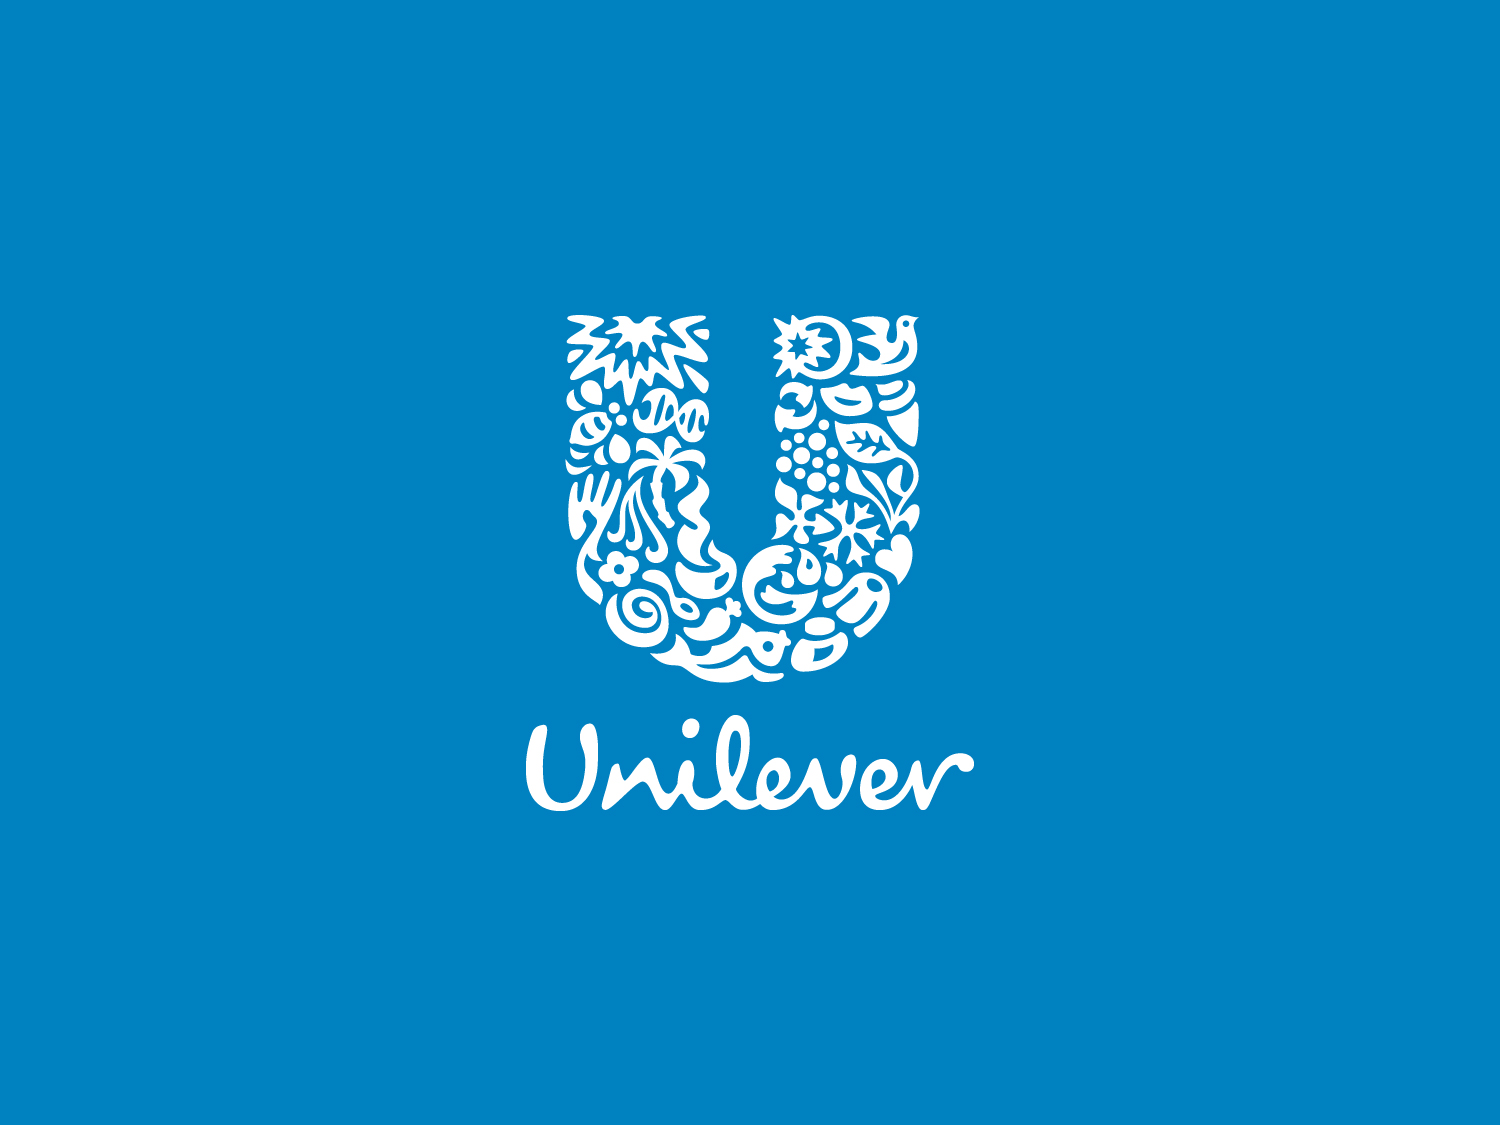 Unilever loto type